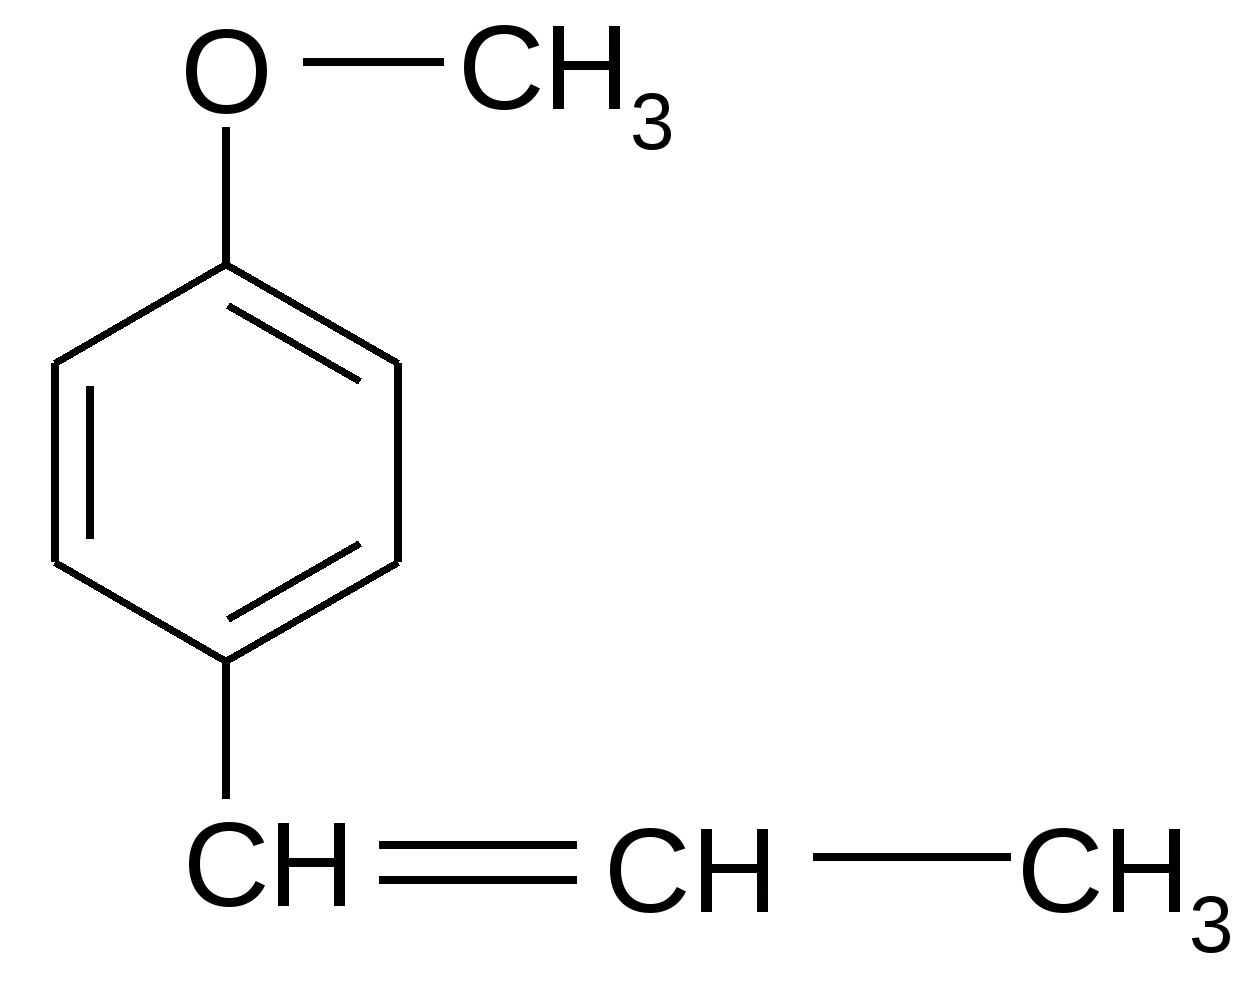 Структурная формула масла. Анетол формула структурная. Анетол химическая формула. Анетол в эфирном масле. Ароматические вещества c9h12.